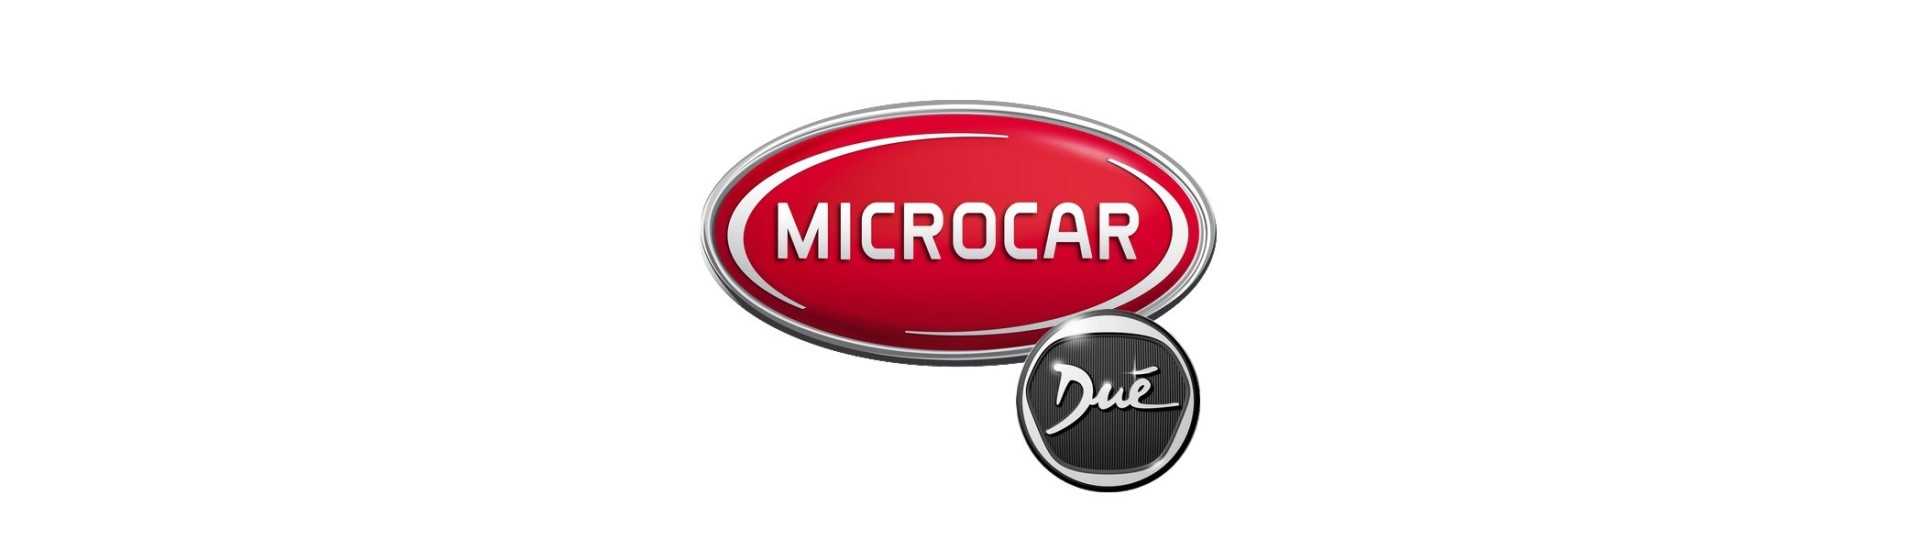 Relais / módulo de carro eletrônico sem permissão Microcar Dué